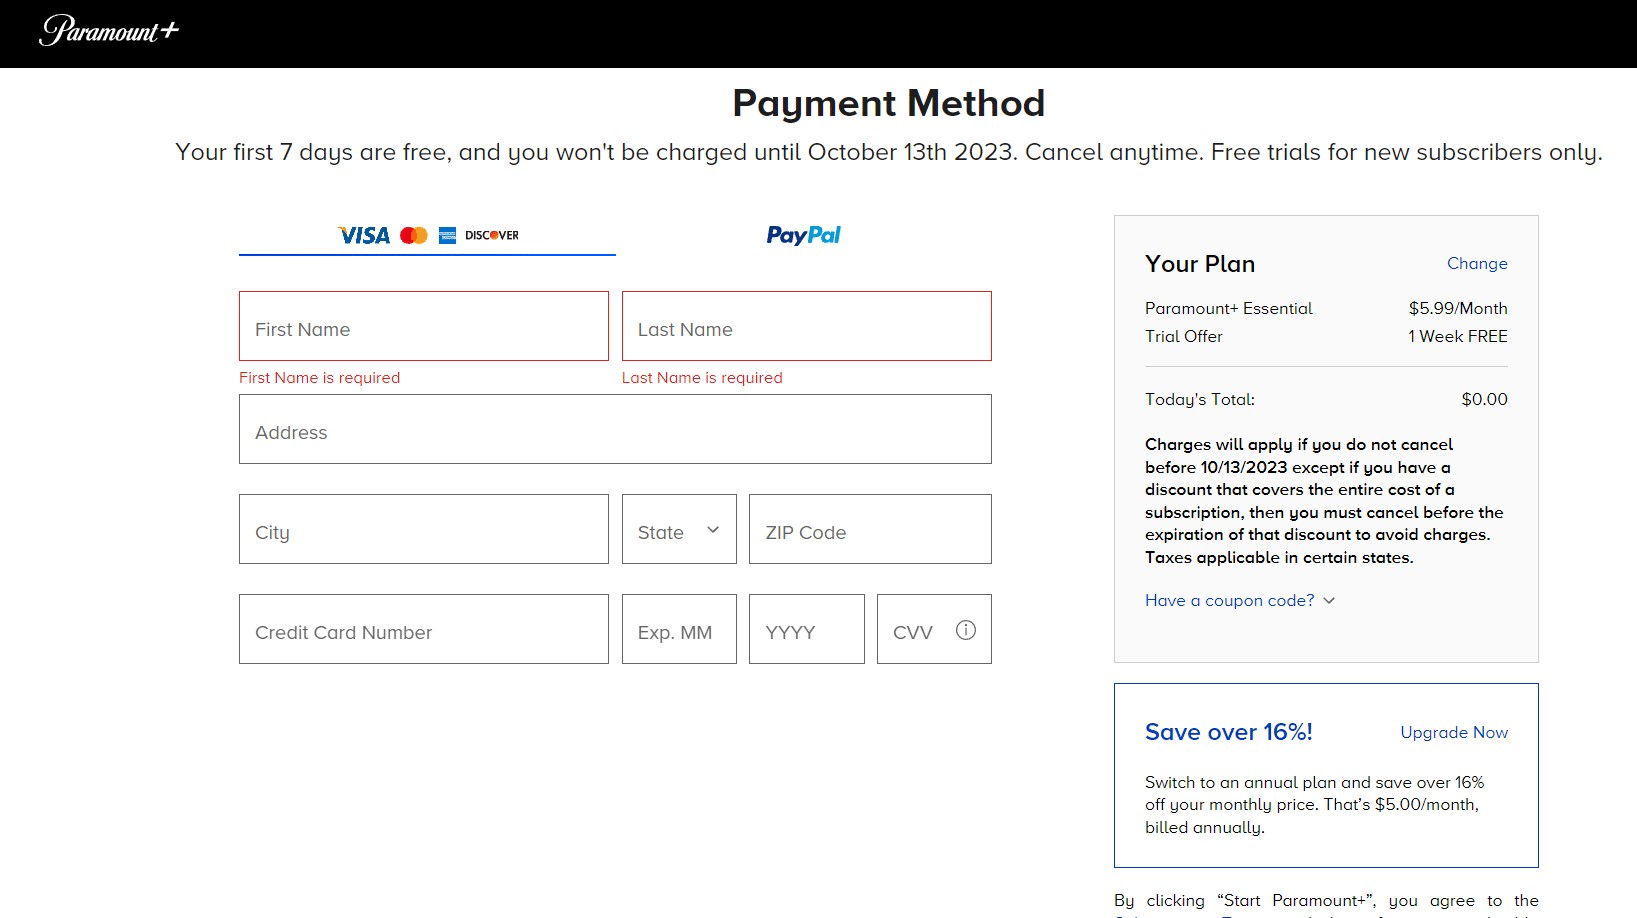 paramount+ payment method screen